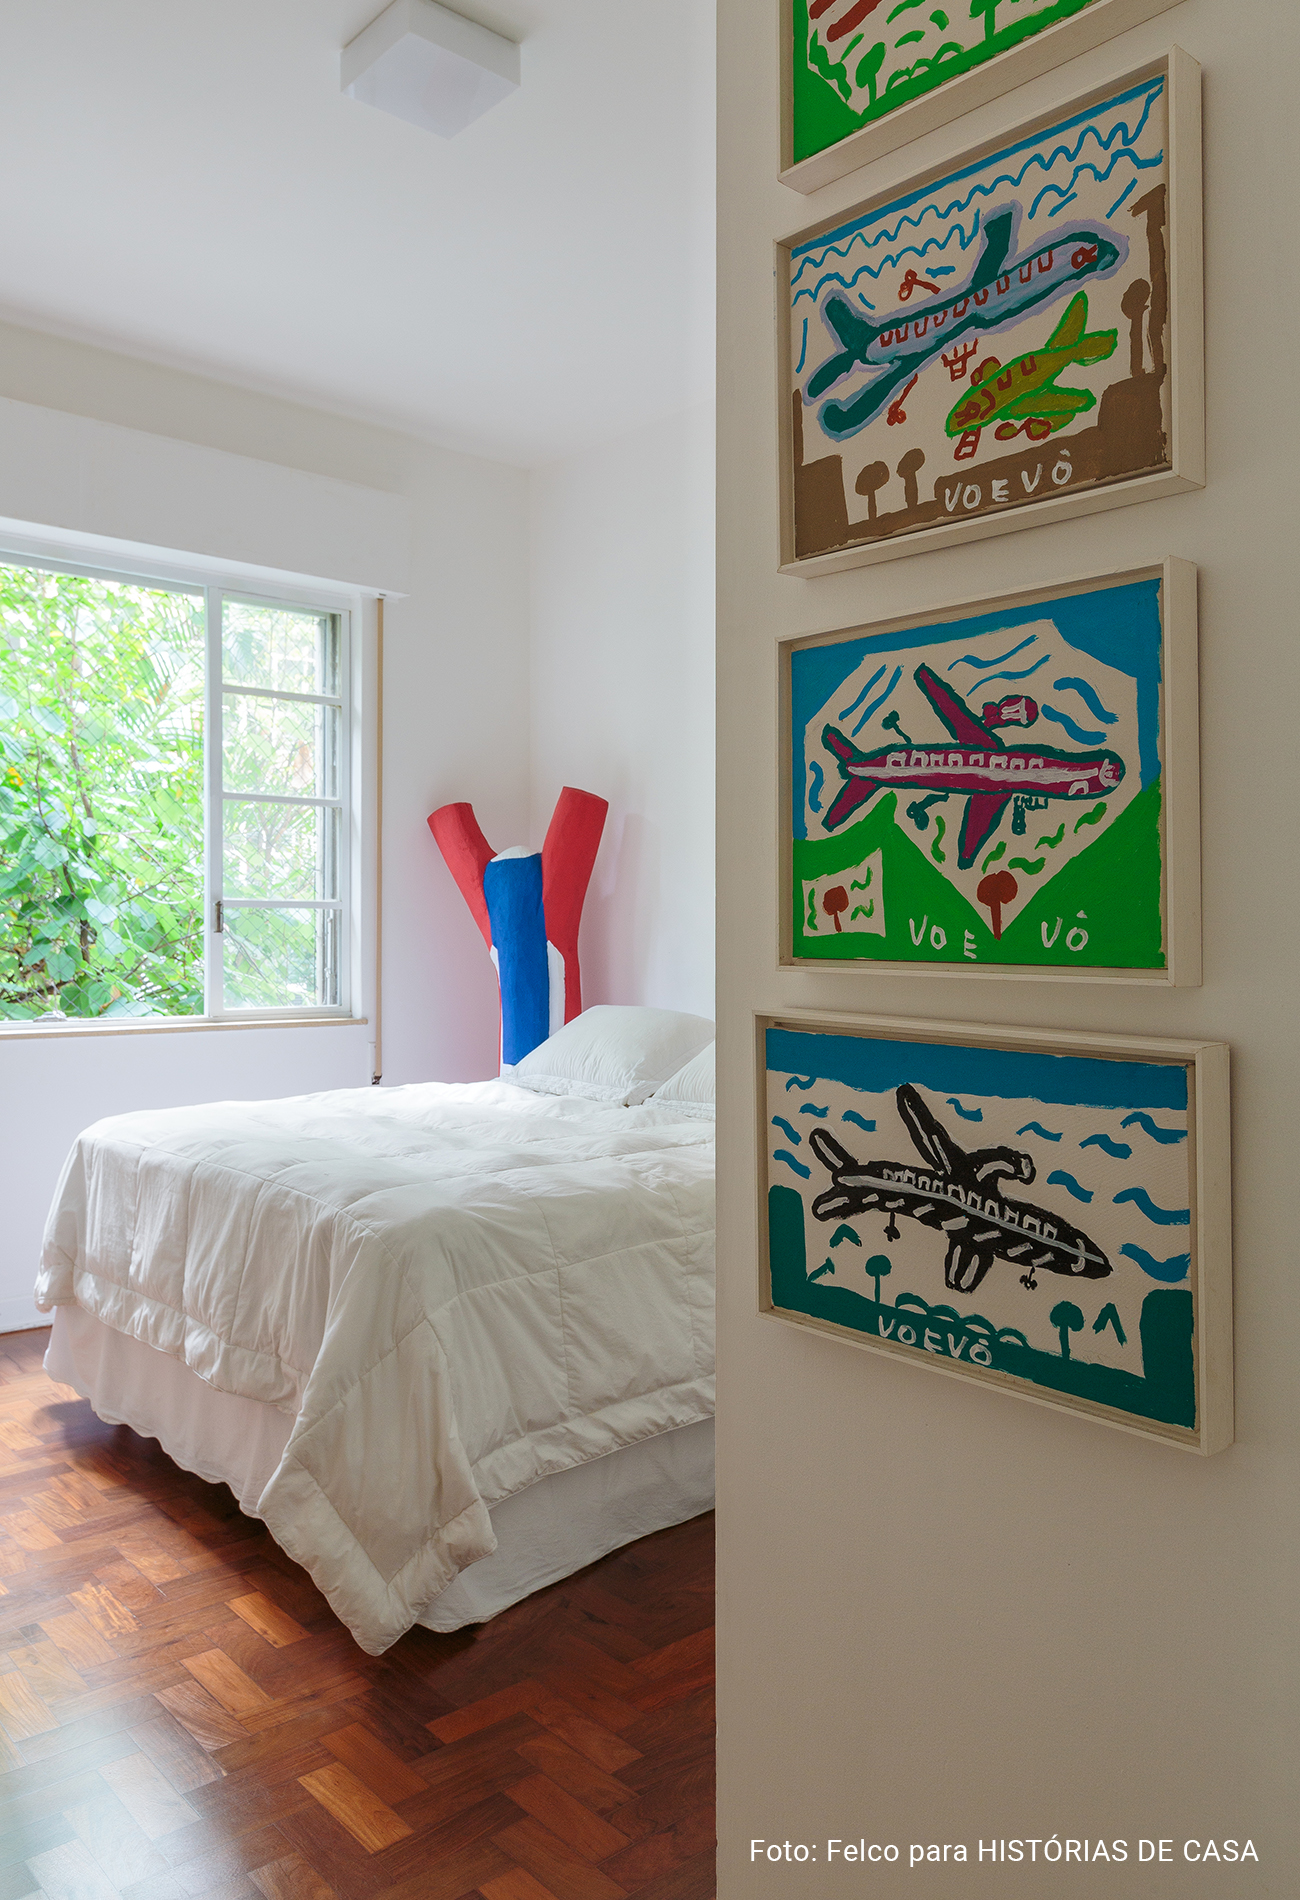 Artesanato e arte popular em apartamento com piso de tacos e luz natural.